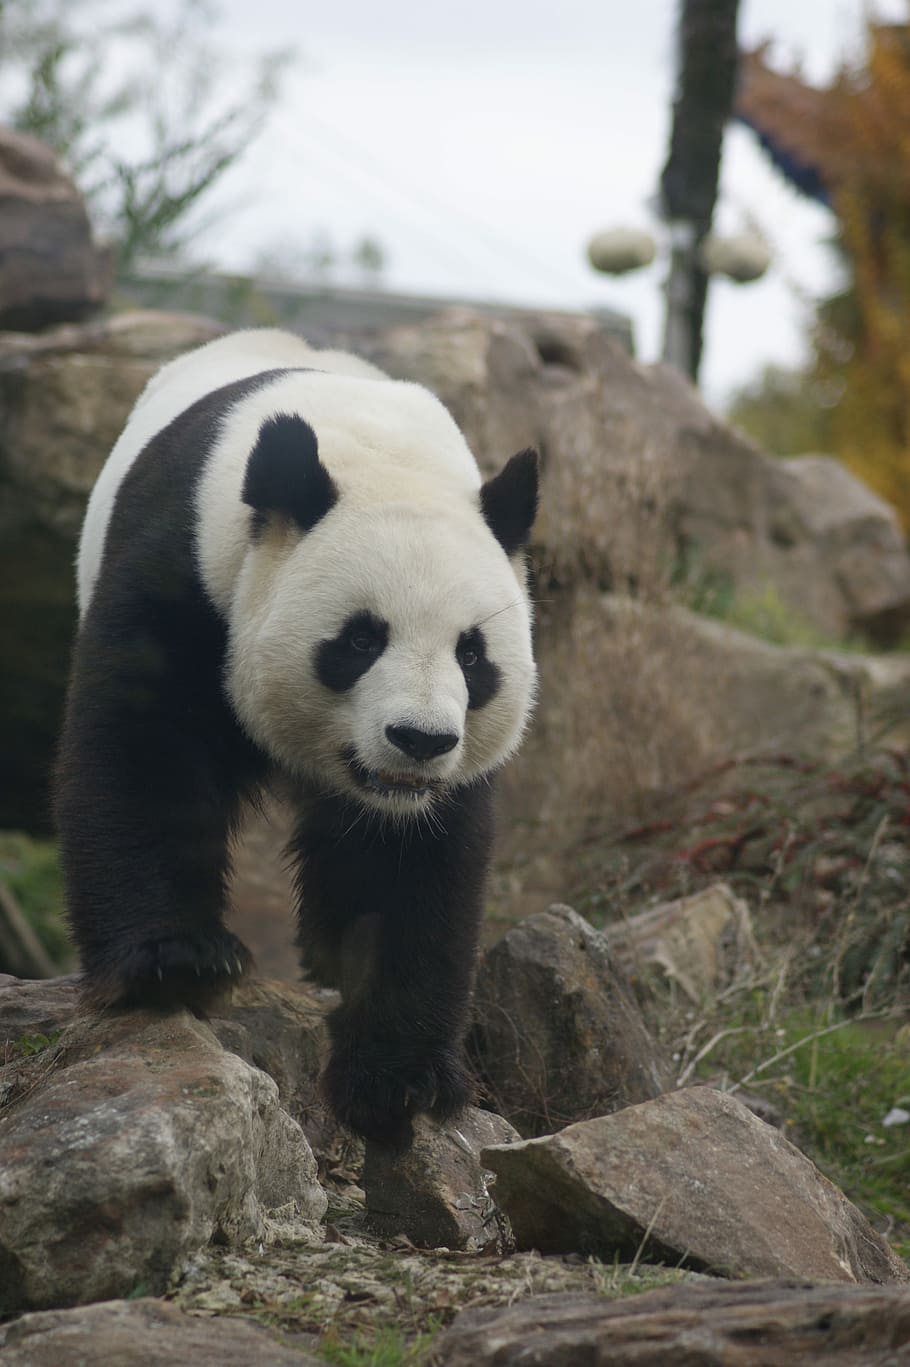 Panda, animal, salvaje, panda - animal, oso, mamífero, fauna, naturaleza, especies en peligro de extinción, panda gigante